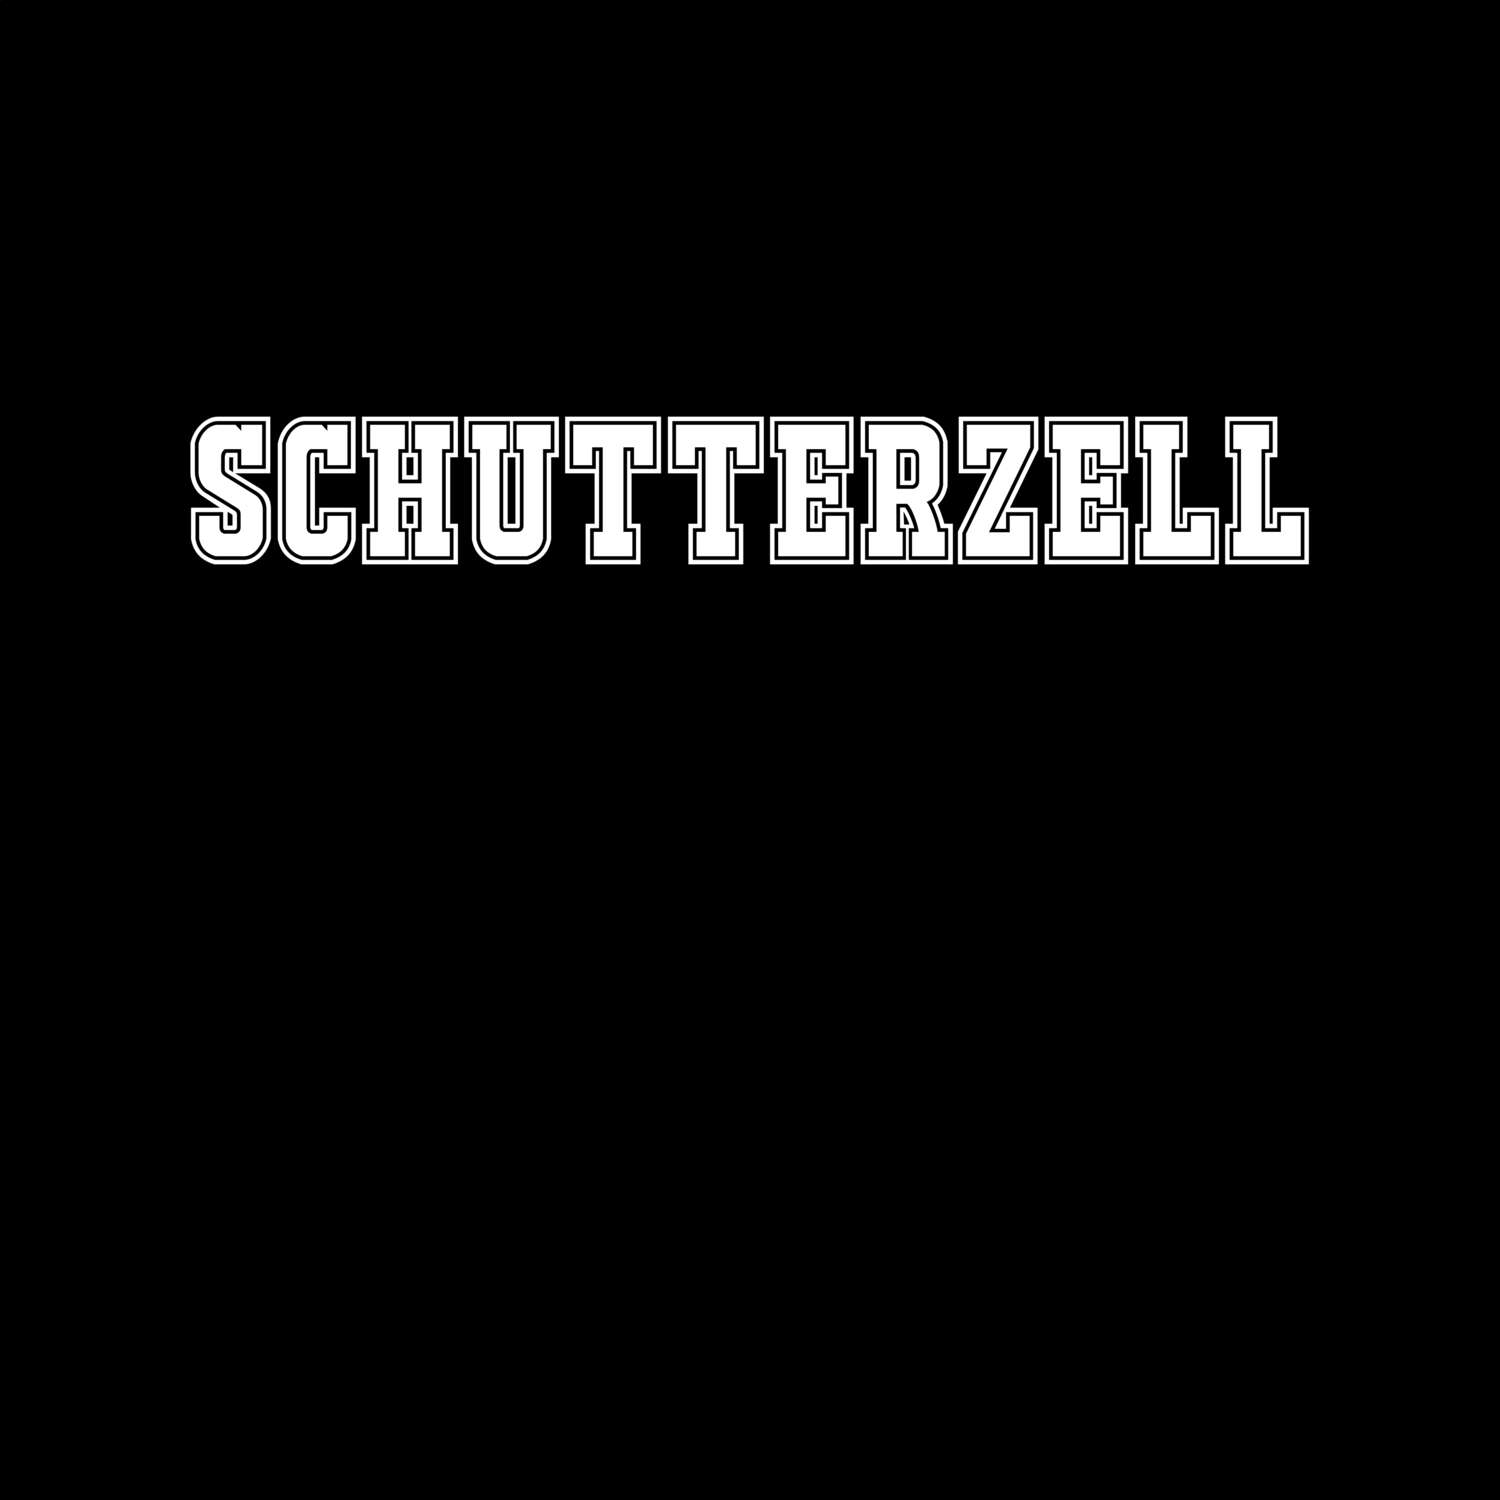 Schutterzell T-Shirt »Classic«